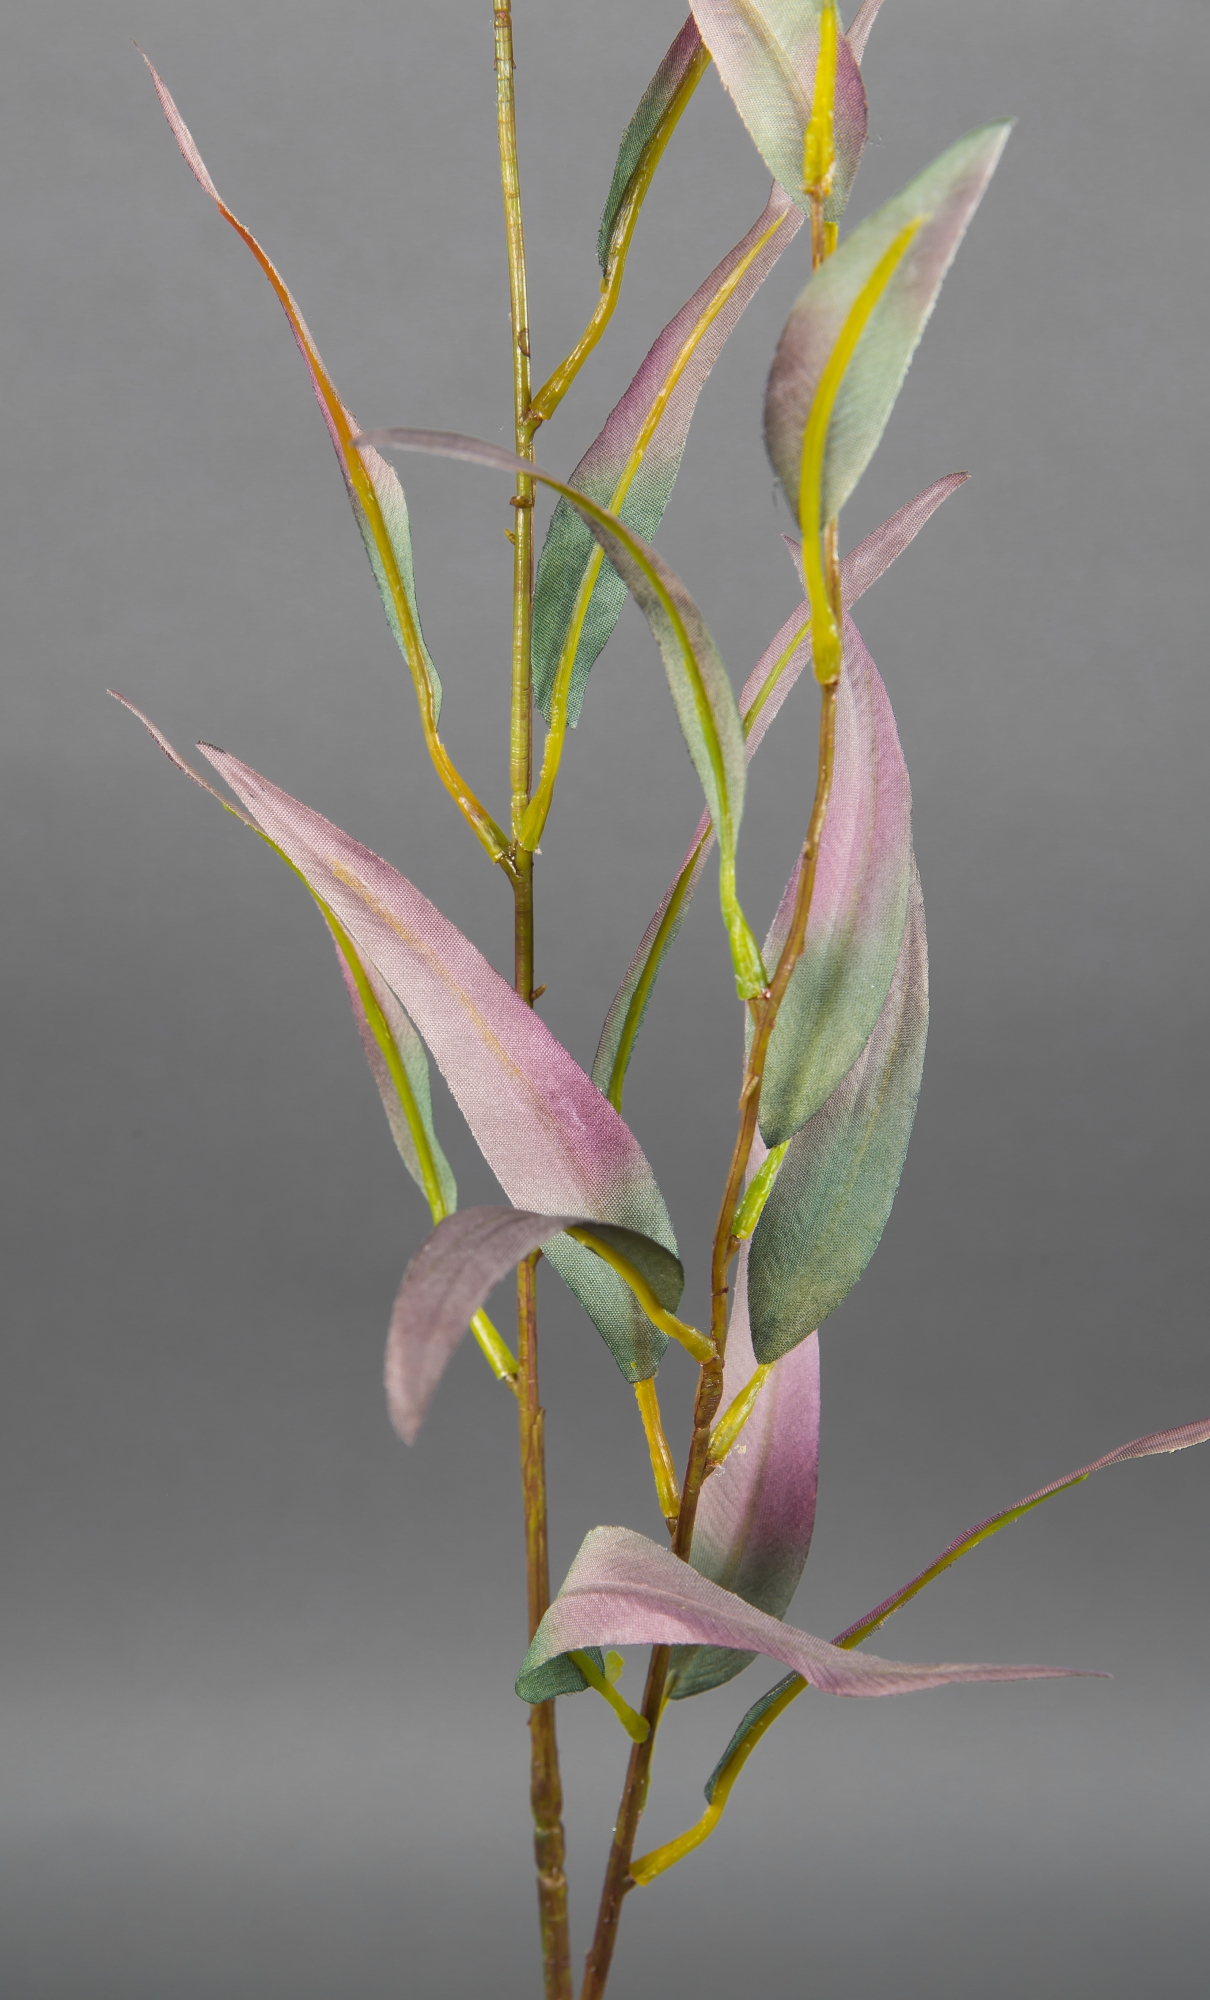 Eukalyptuszweig 90cm grün-rosa DP Kunstzweig Kunstpflanzen künstlicher Zweige künstliche Eukalyptus